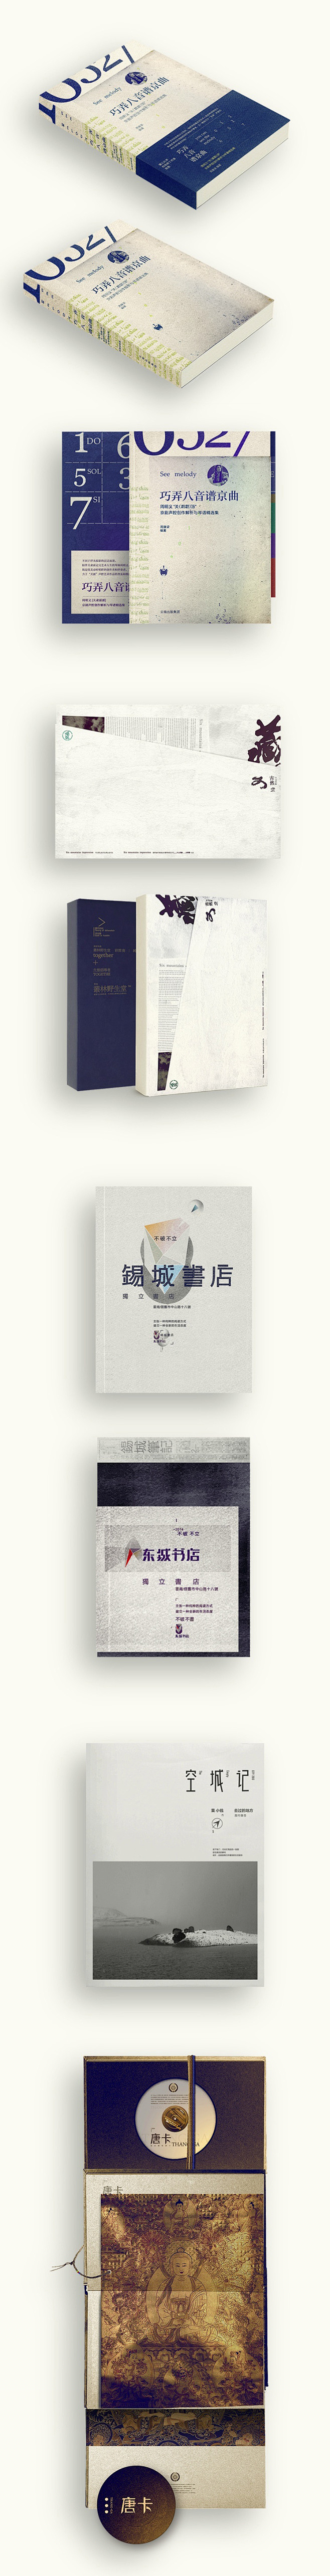 装帧设计+ - 视觉中国设计师社区